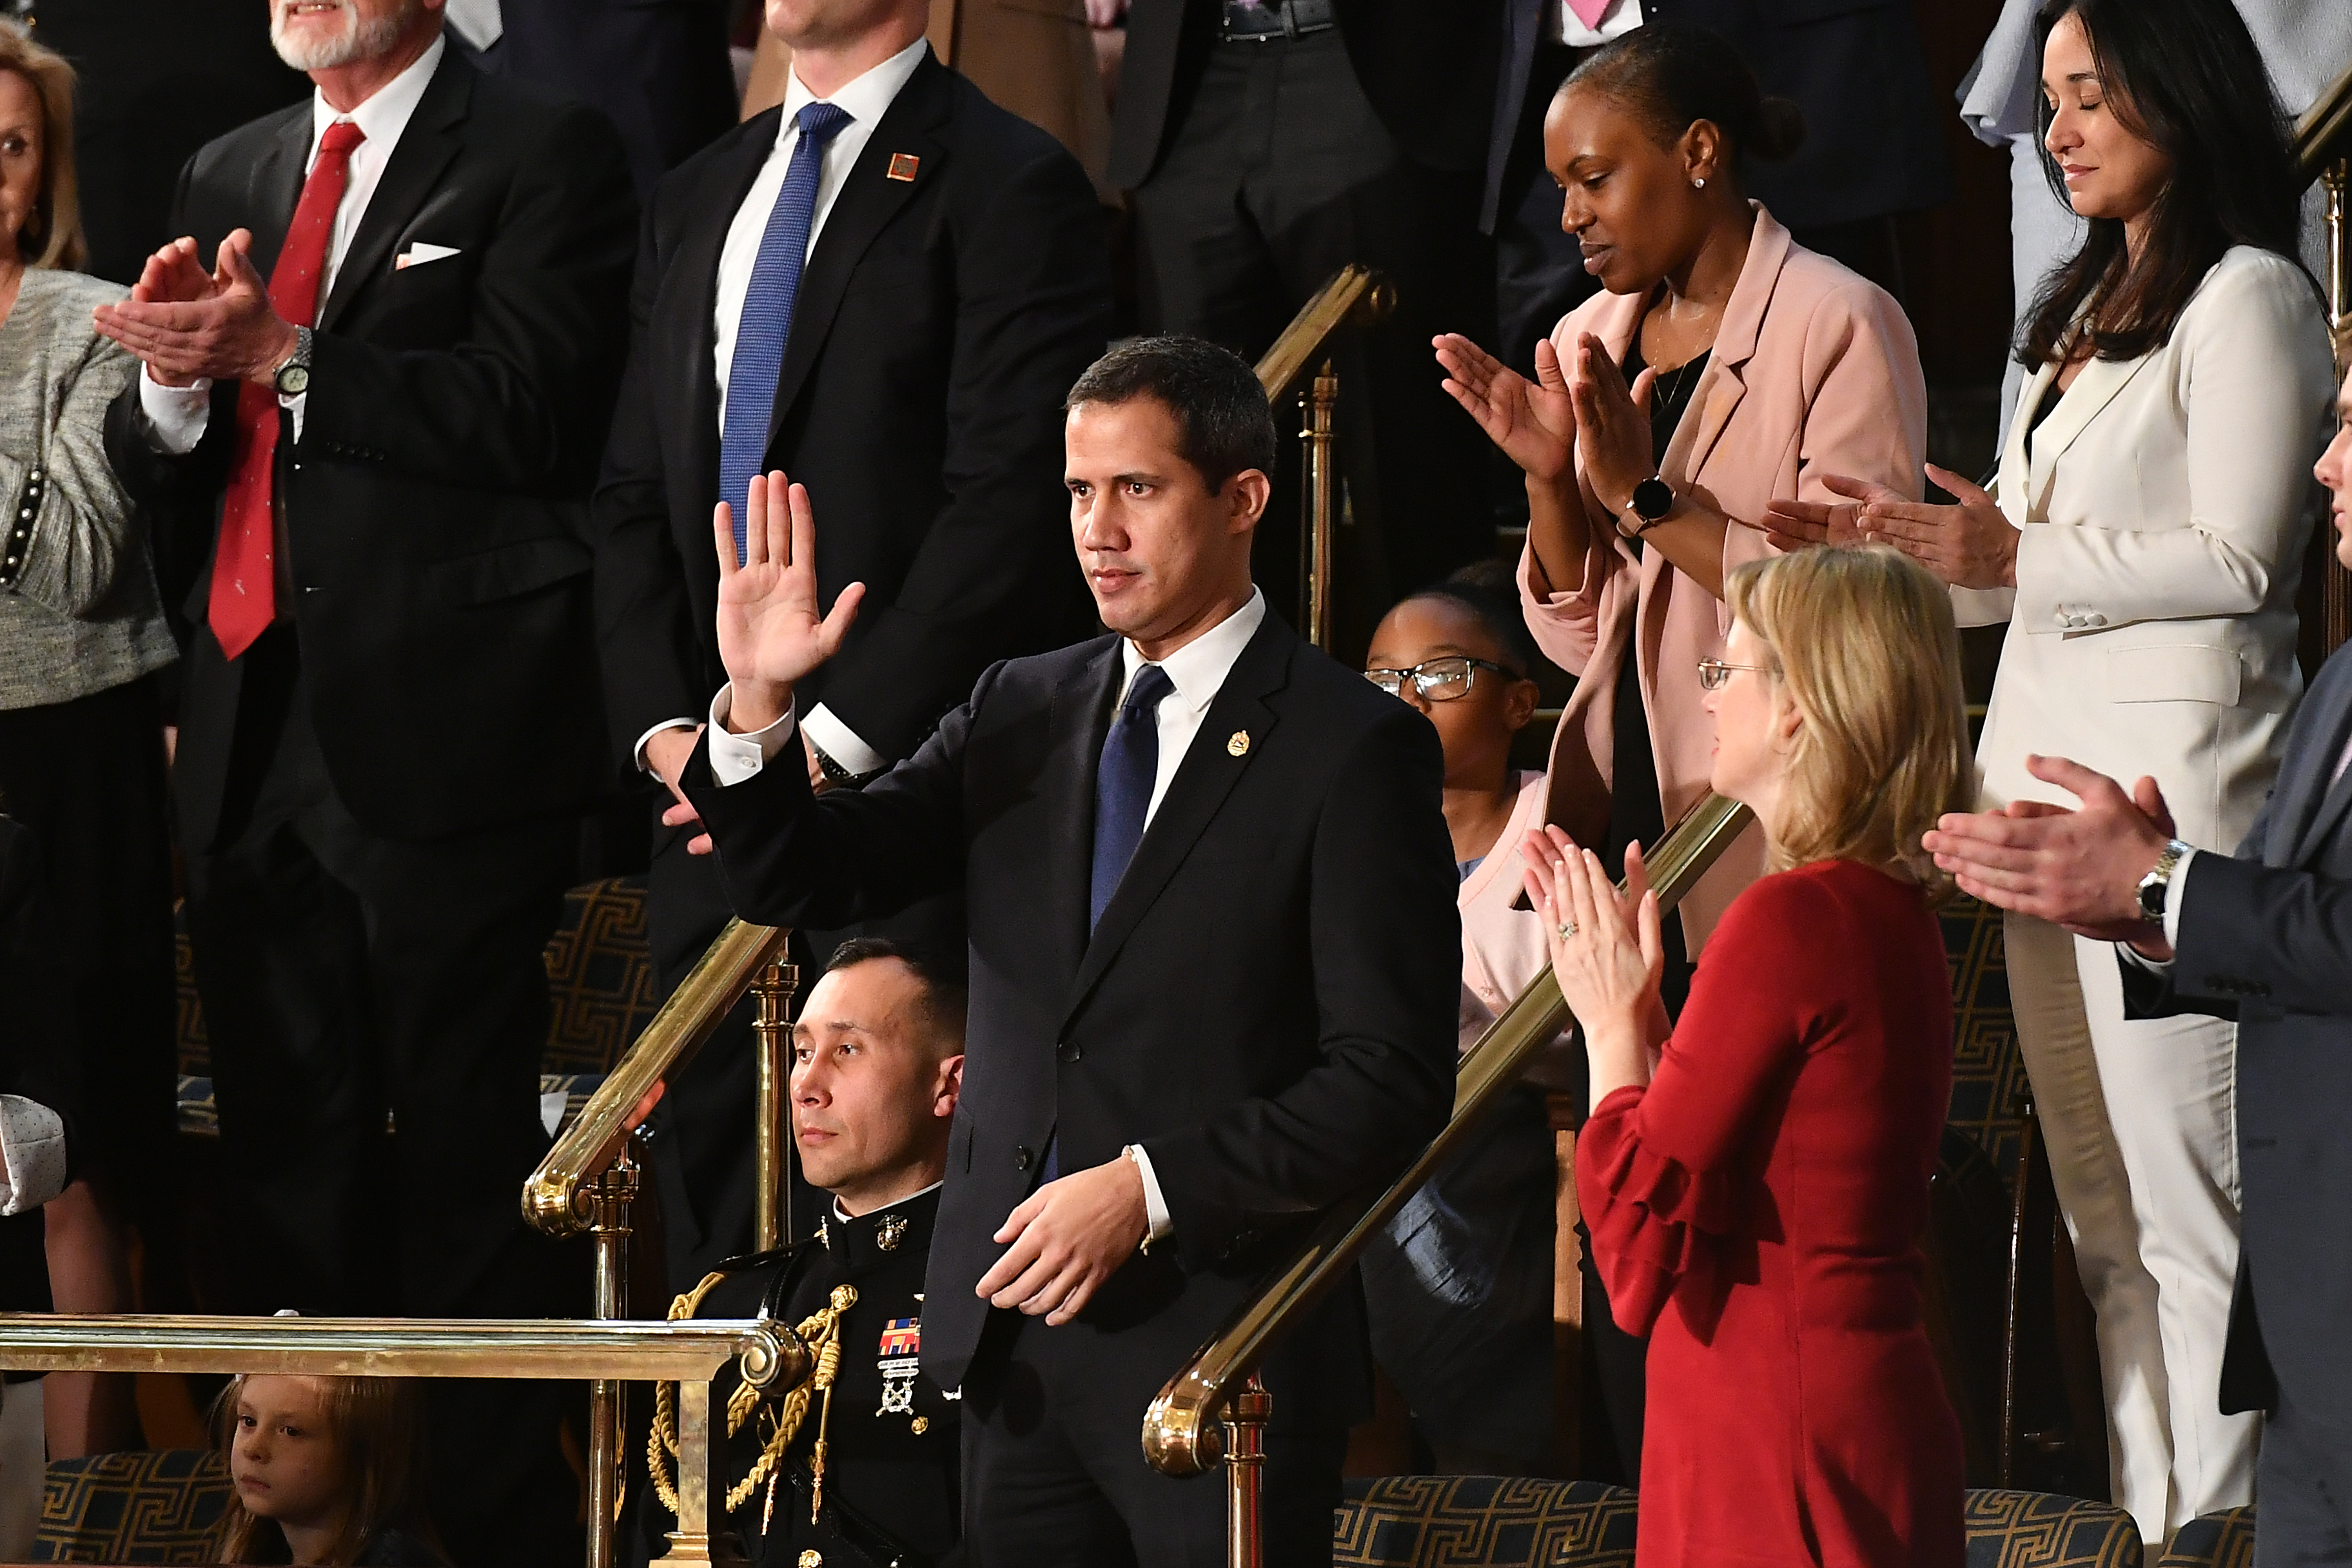 EN FOTOS: Guaidó fue invitado de honor en el discurso del estado de la Unión de Trump